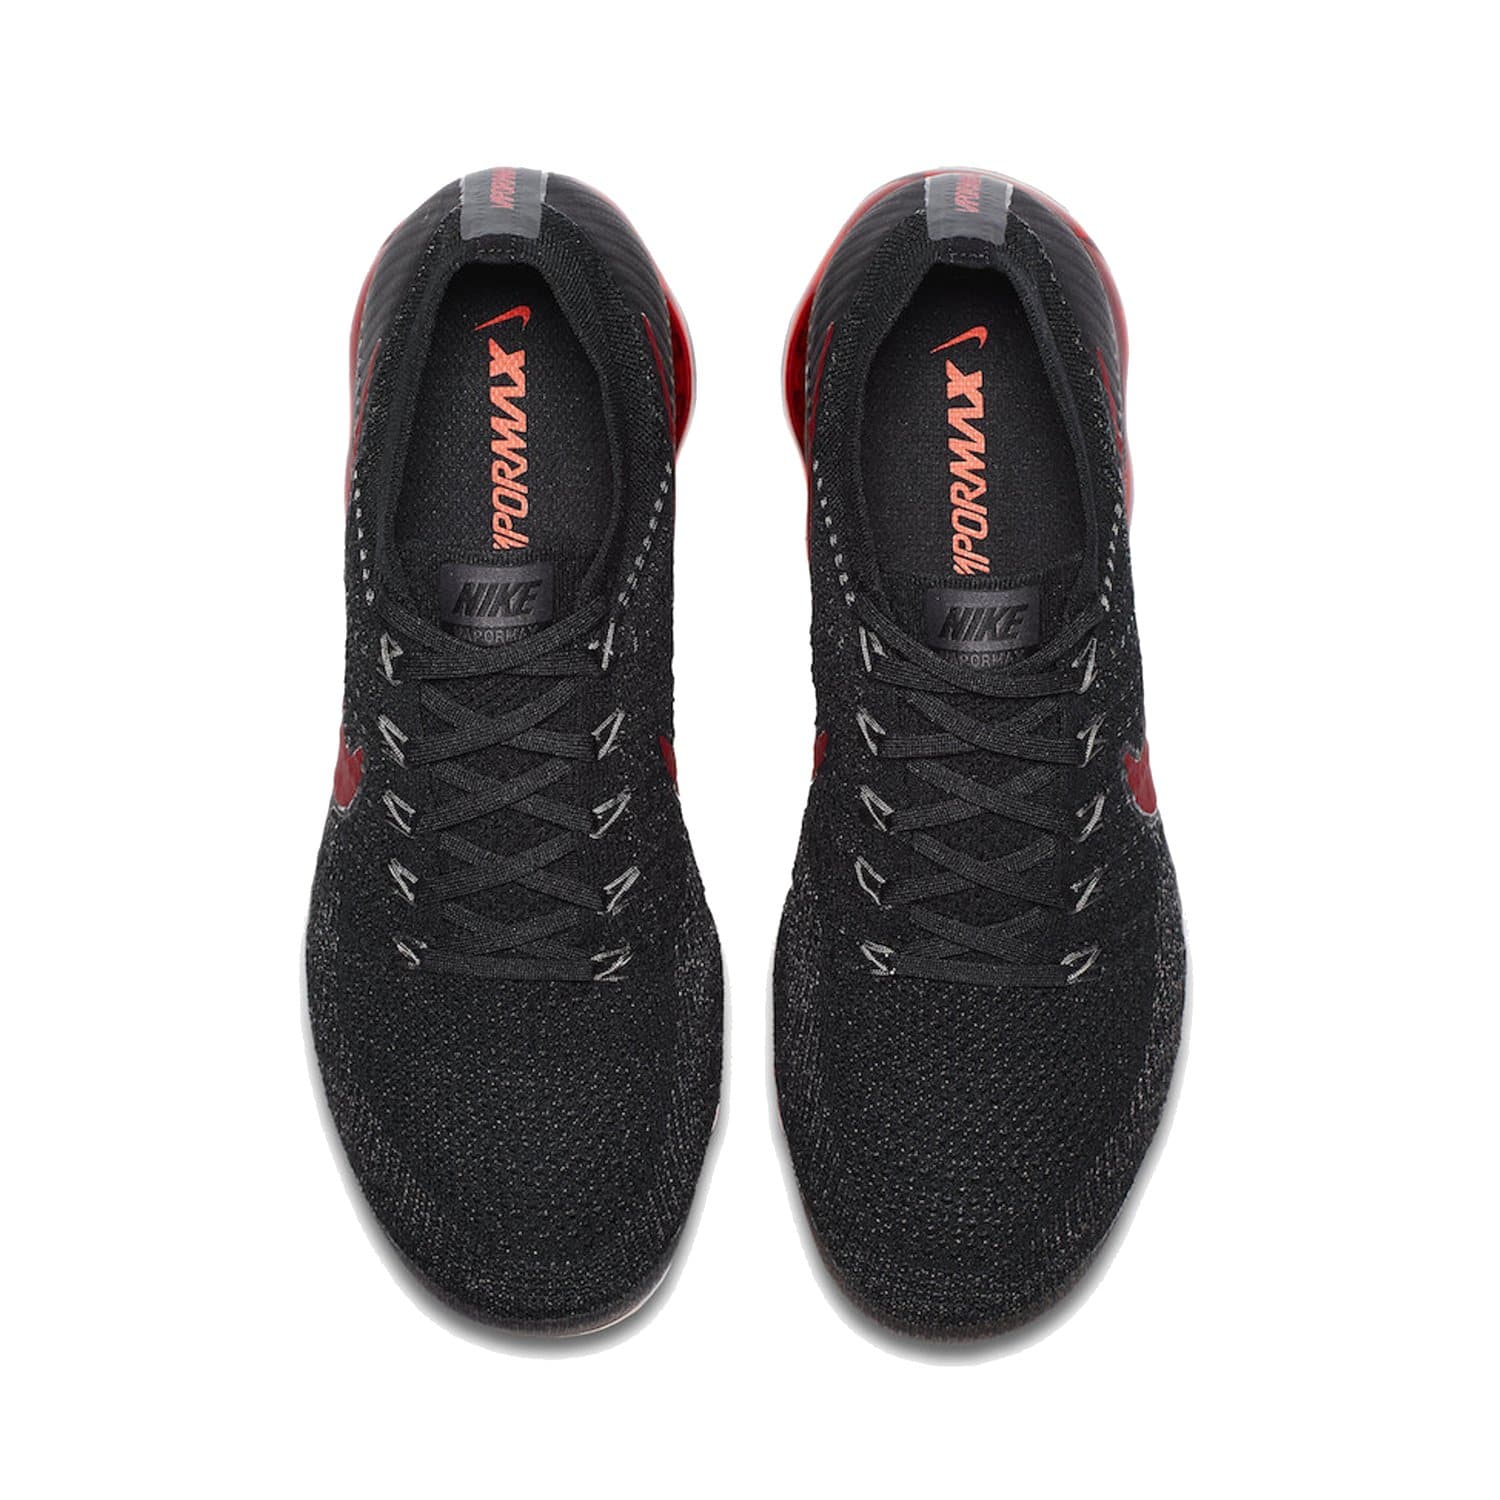 Air Max Vapormax 1.0 BRED – IbuySneakers